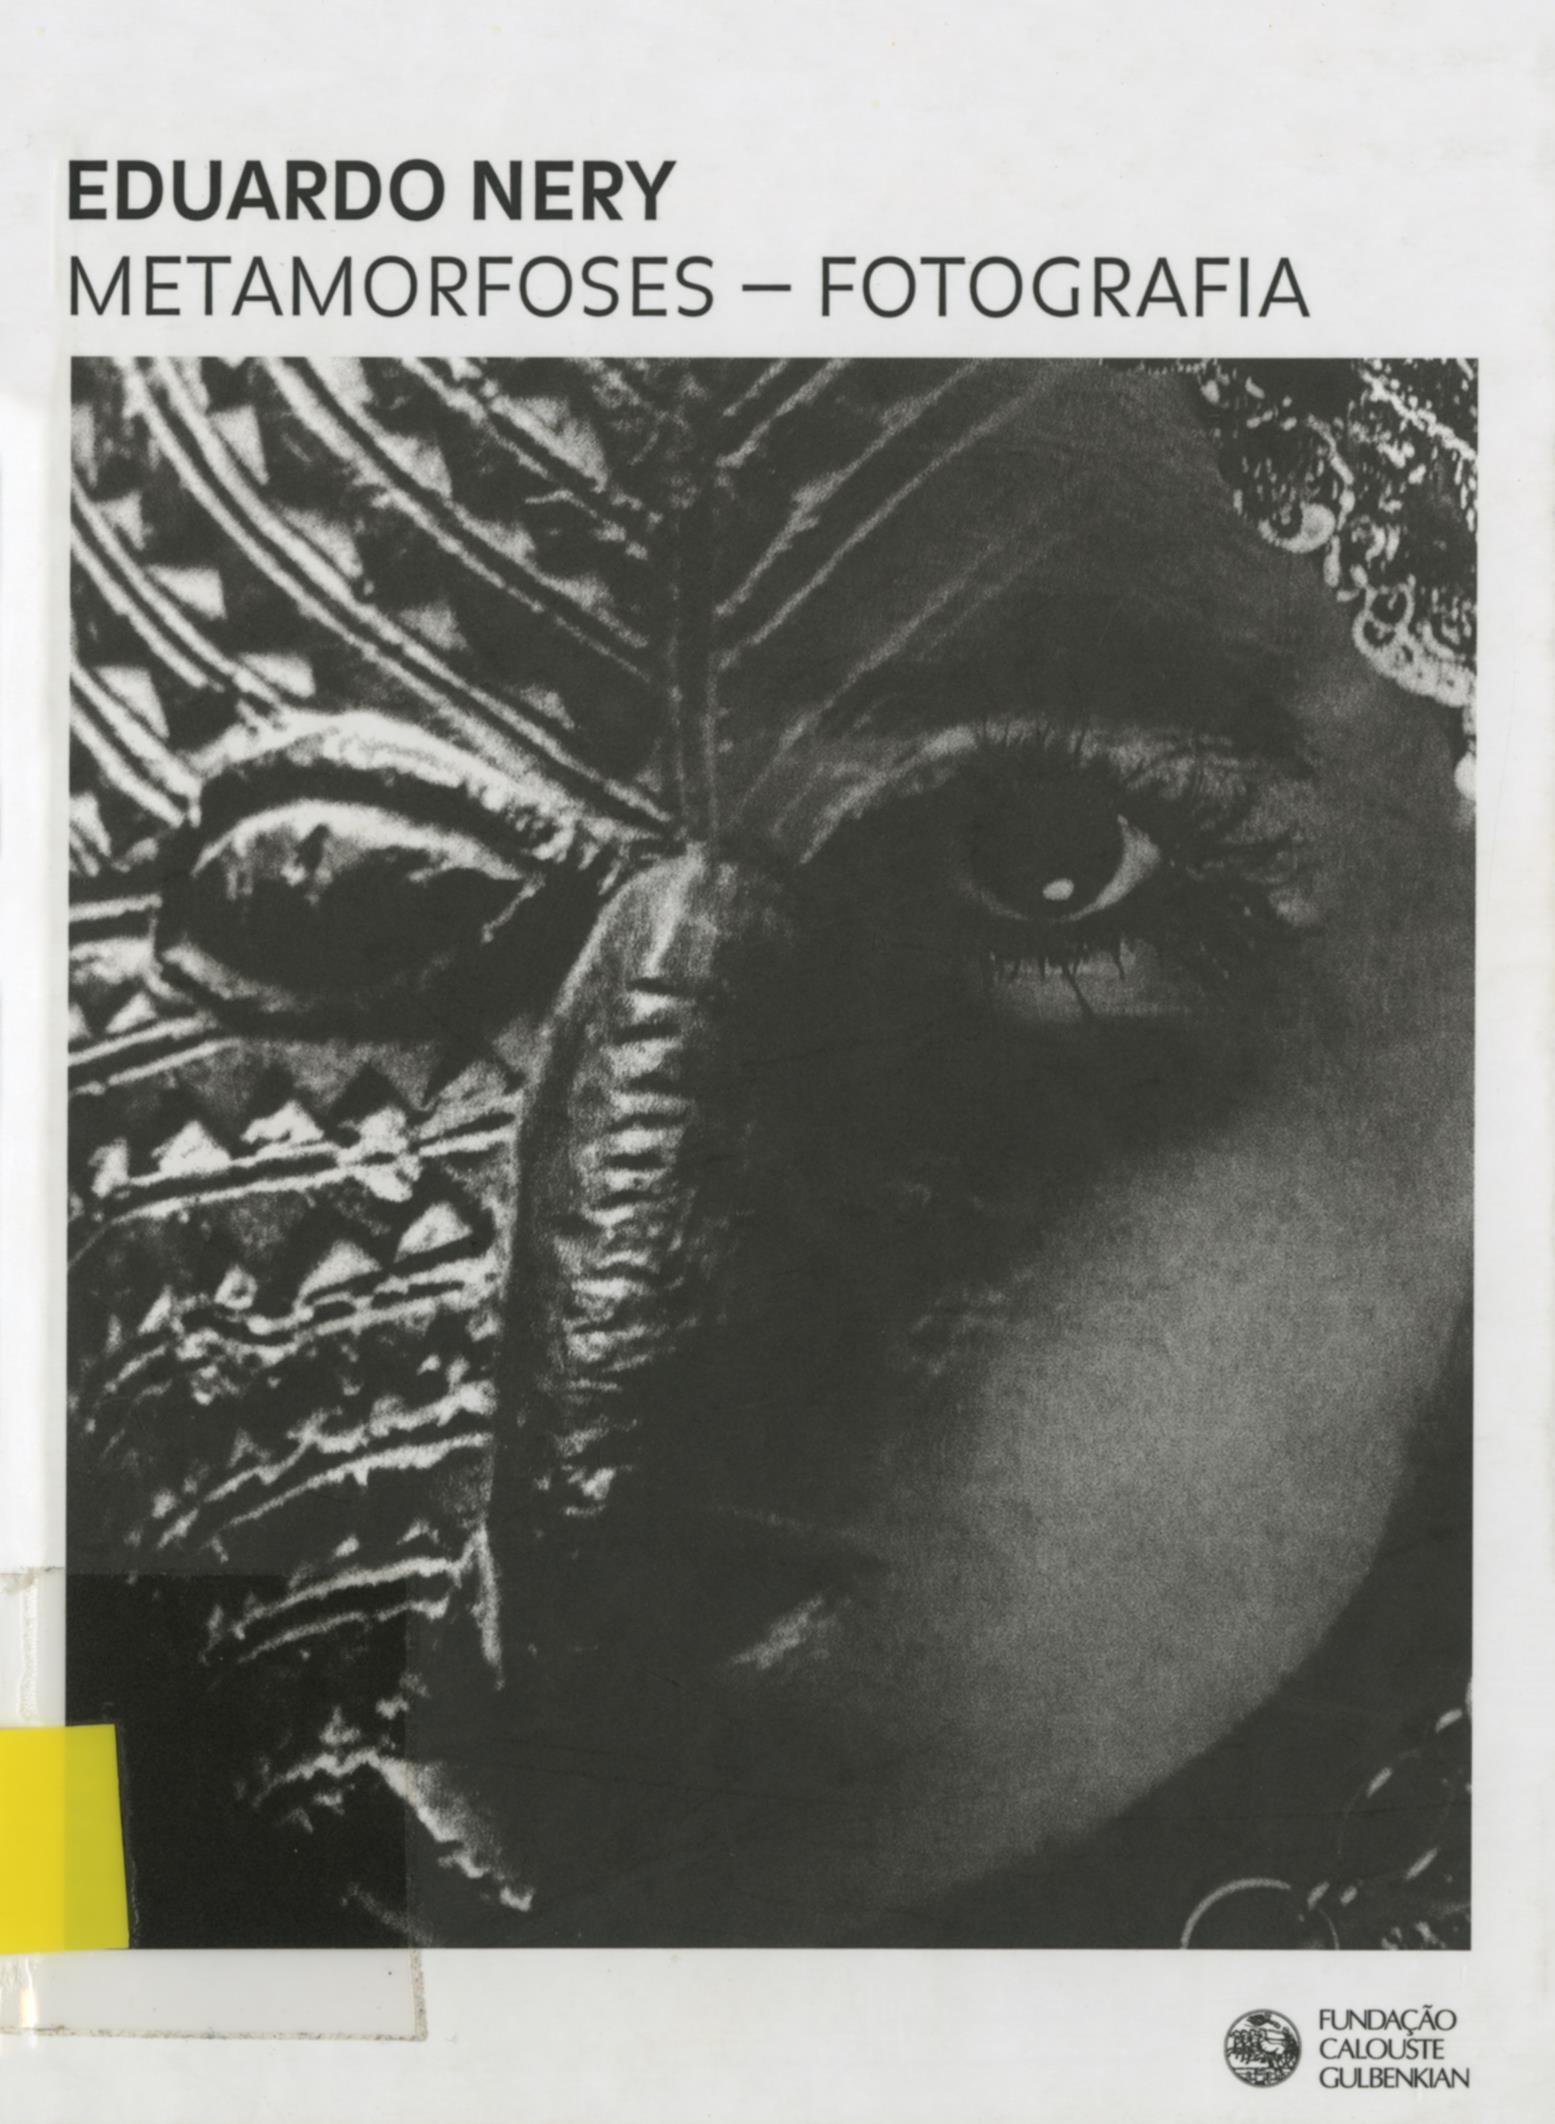 Eduardo Nery. Metamorfoses. Fotografias